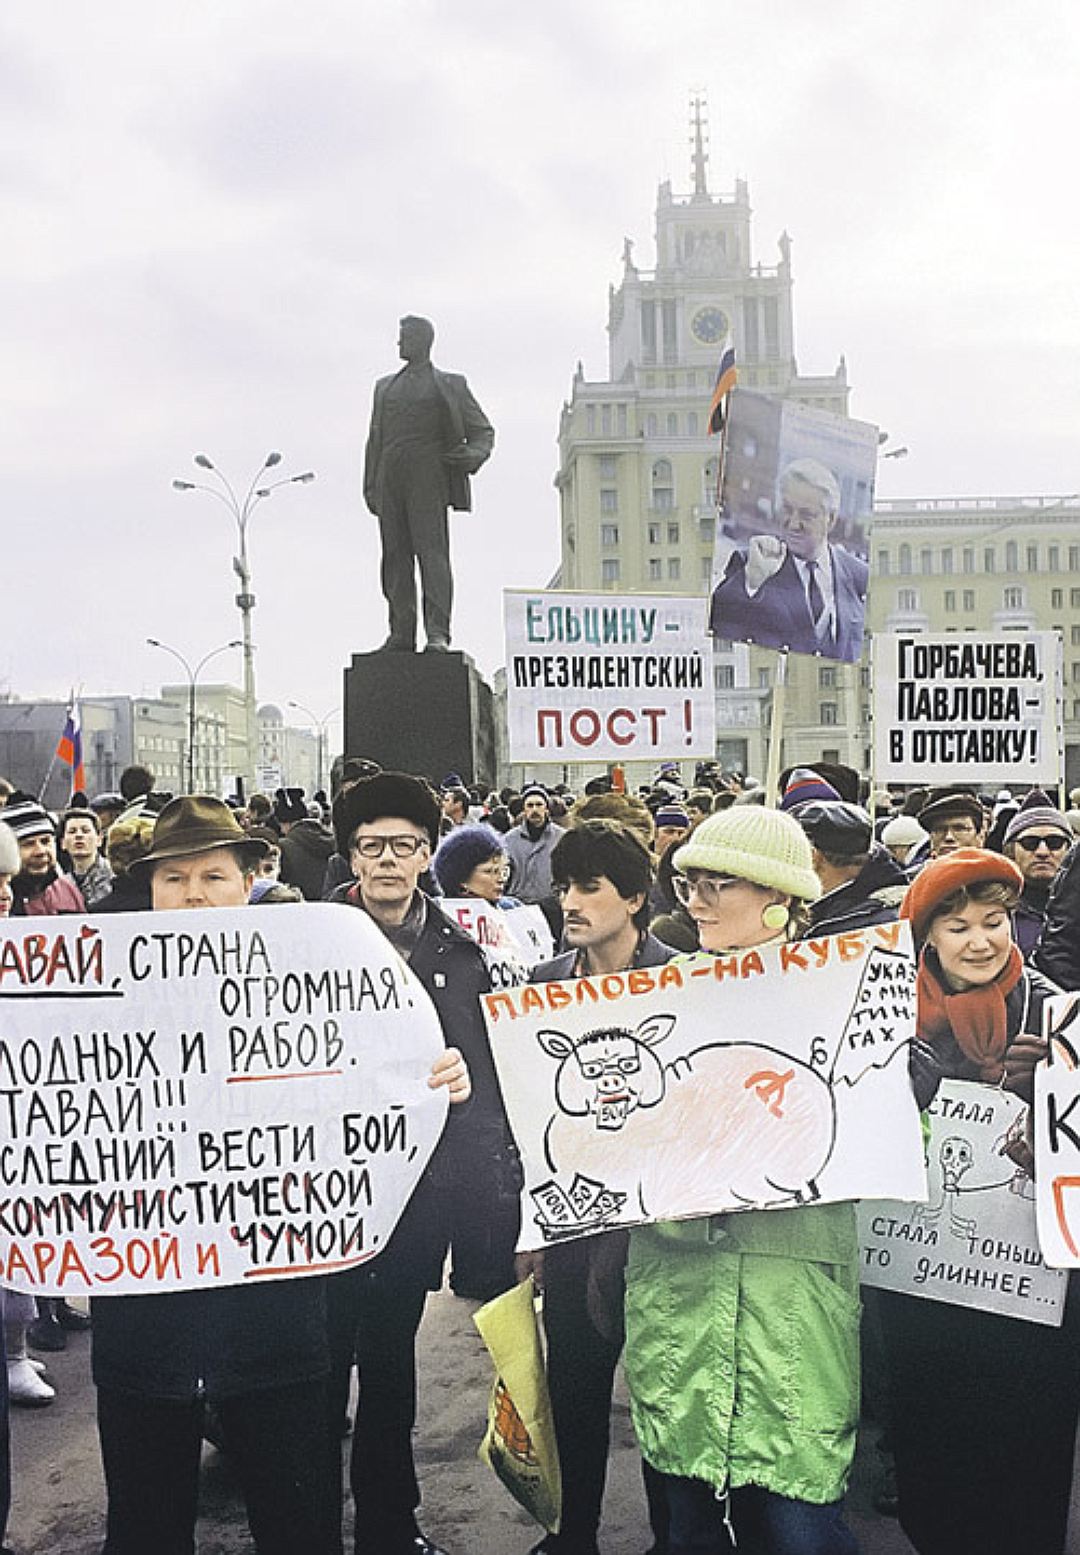 Ельцин перестройка. Москва 1991 митинг за Ельцина. Митинг против Ельцина 1991. Протесты против Ельцина 1993. Митинги за Ельцина 1991 год.